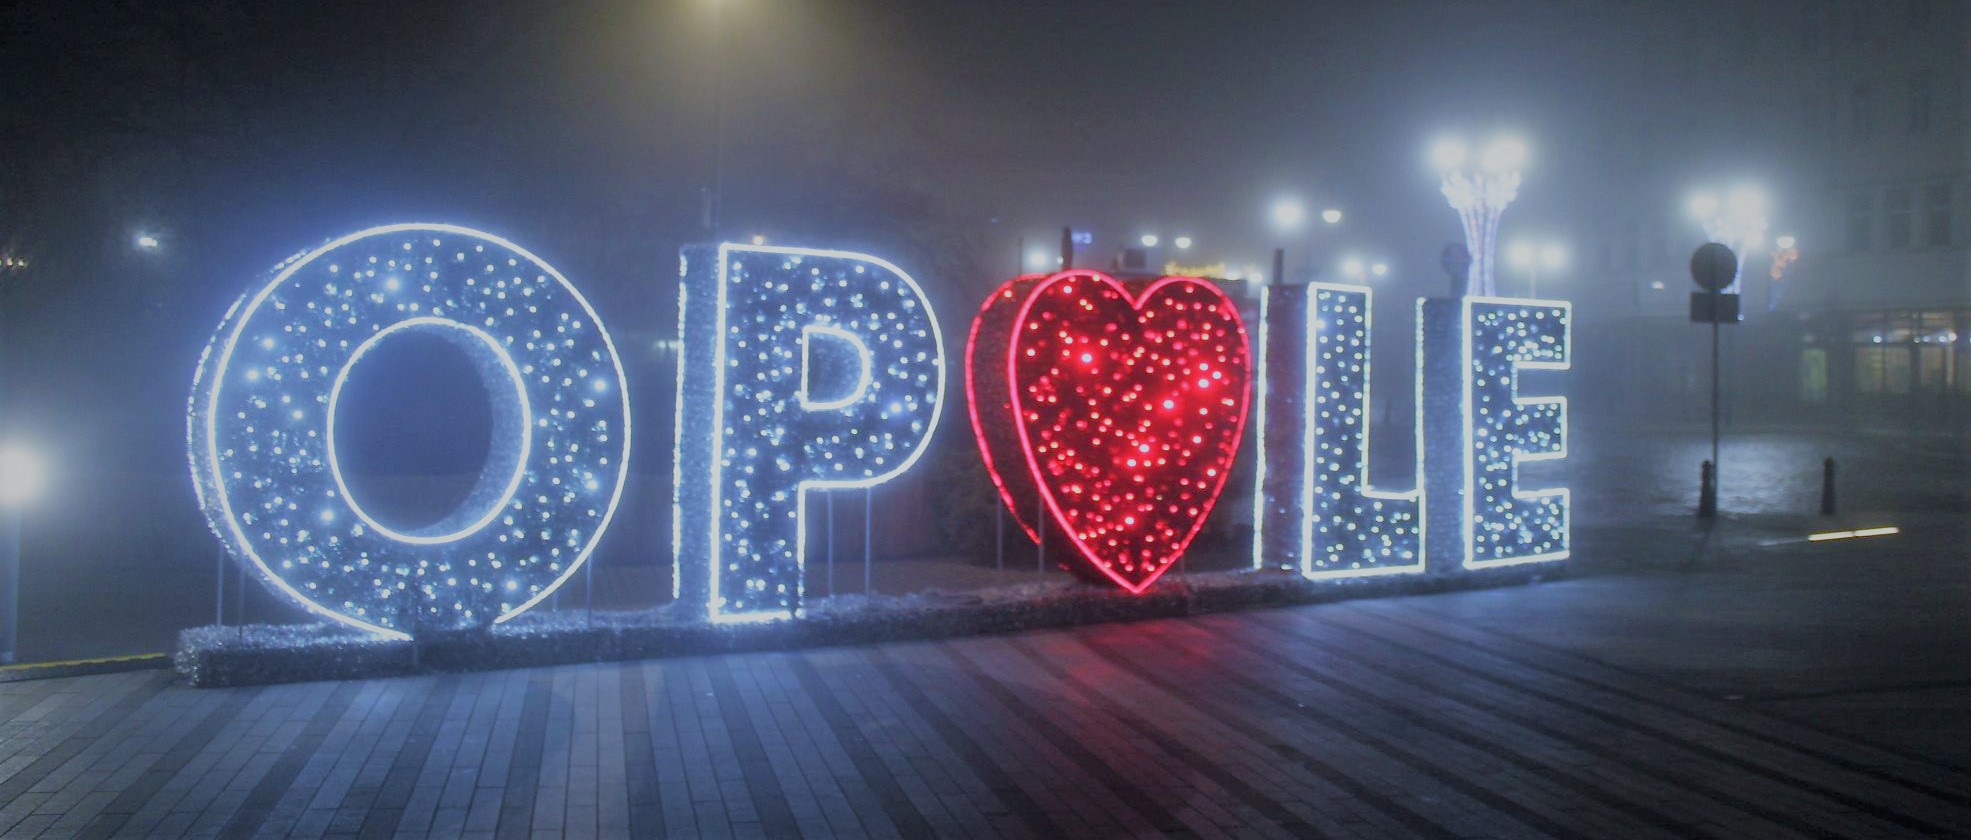 Zdjęcie zrobione nocą przedstawiające podświetlony napis OPOLE. 